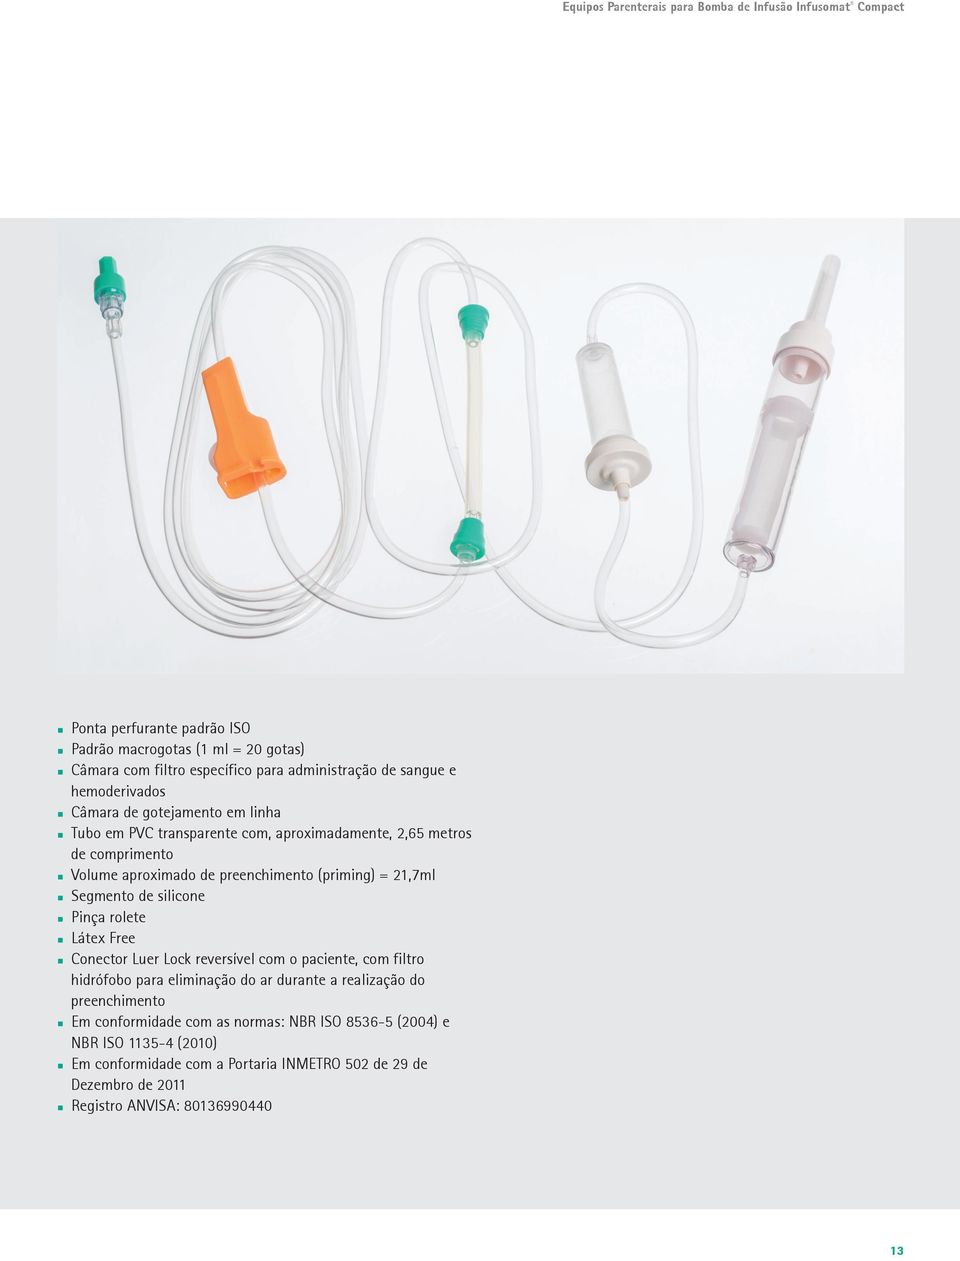 21,7ml Segmento de silicone Pinça rolete Látex Free Conector Luer Lock reversível com o paciente, com filtro hidrófobo para eliminação do ar durante a realização do